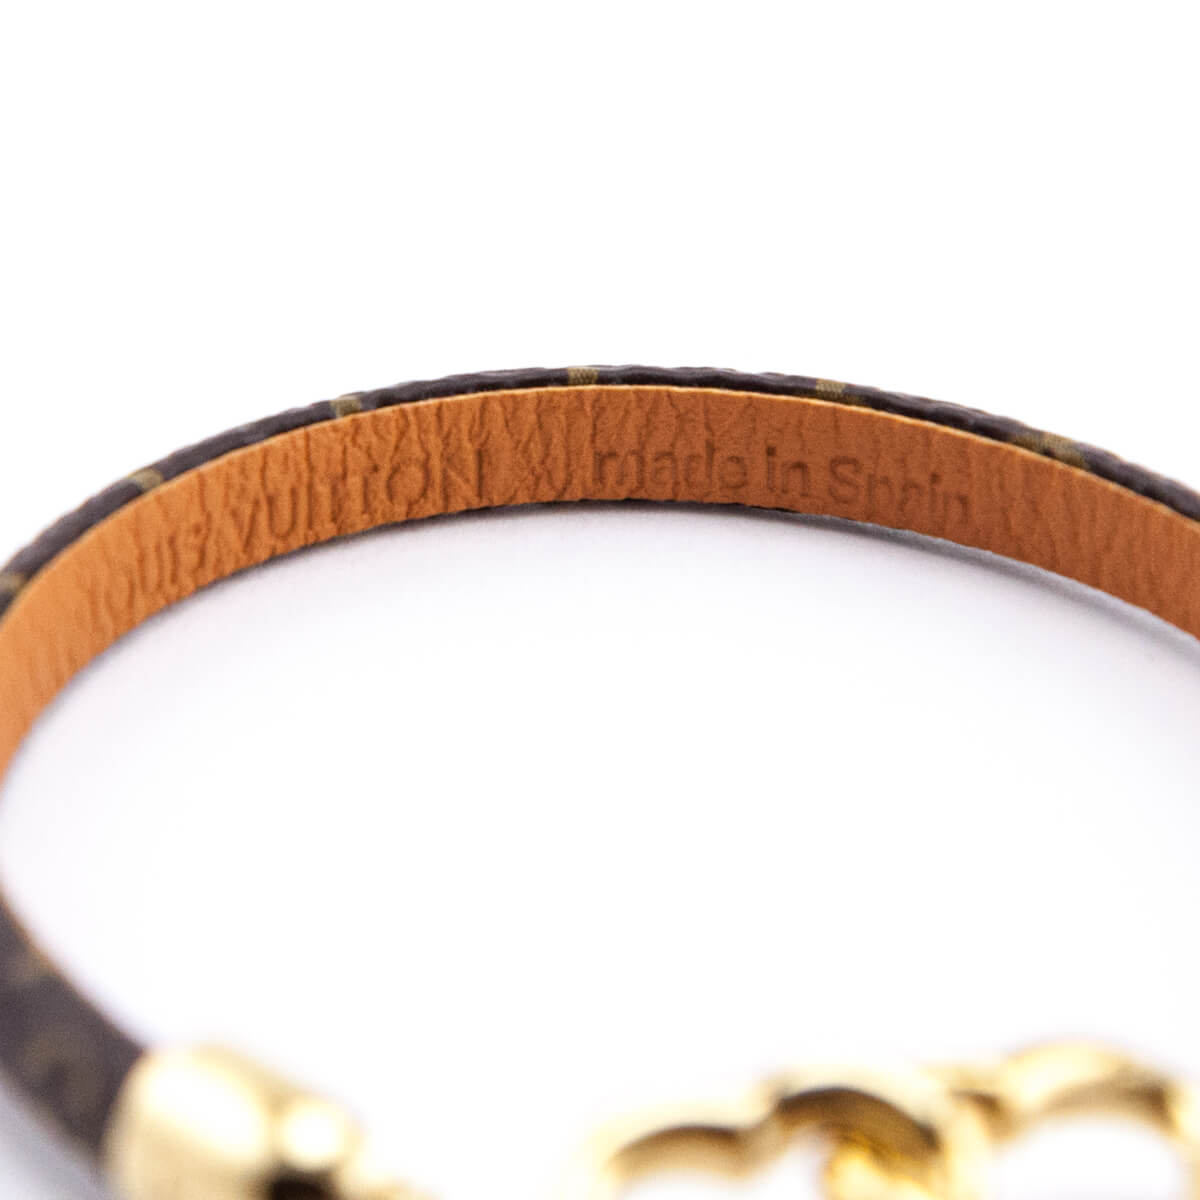 Louis Vuitton LV Confidential Bracelet Brown Monogram. Size 19